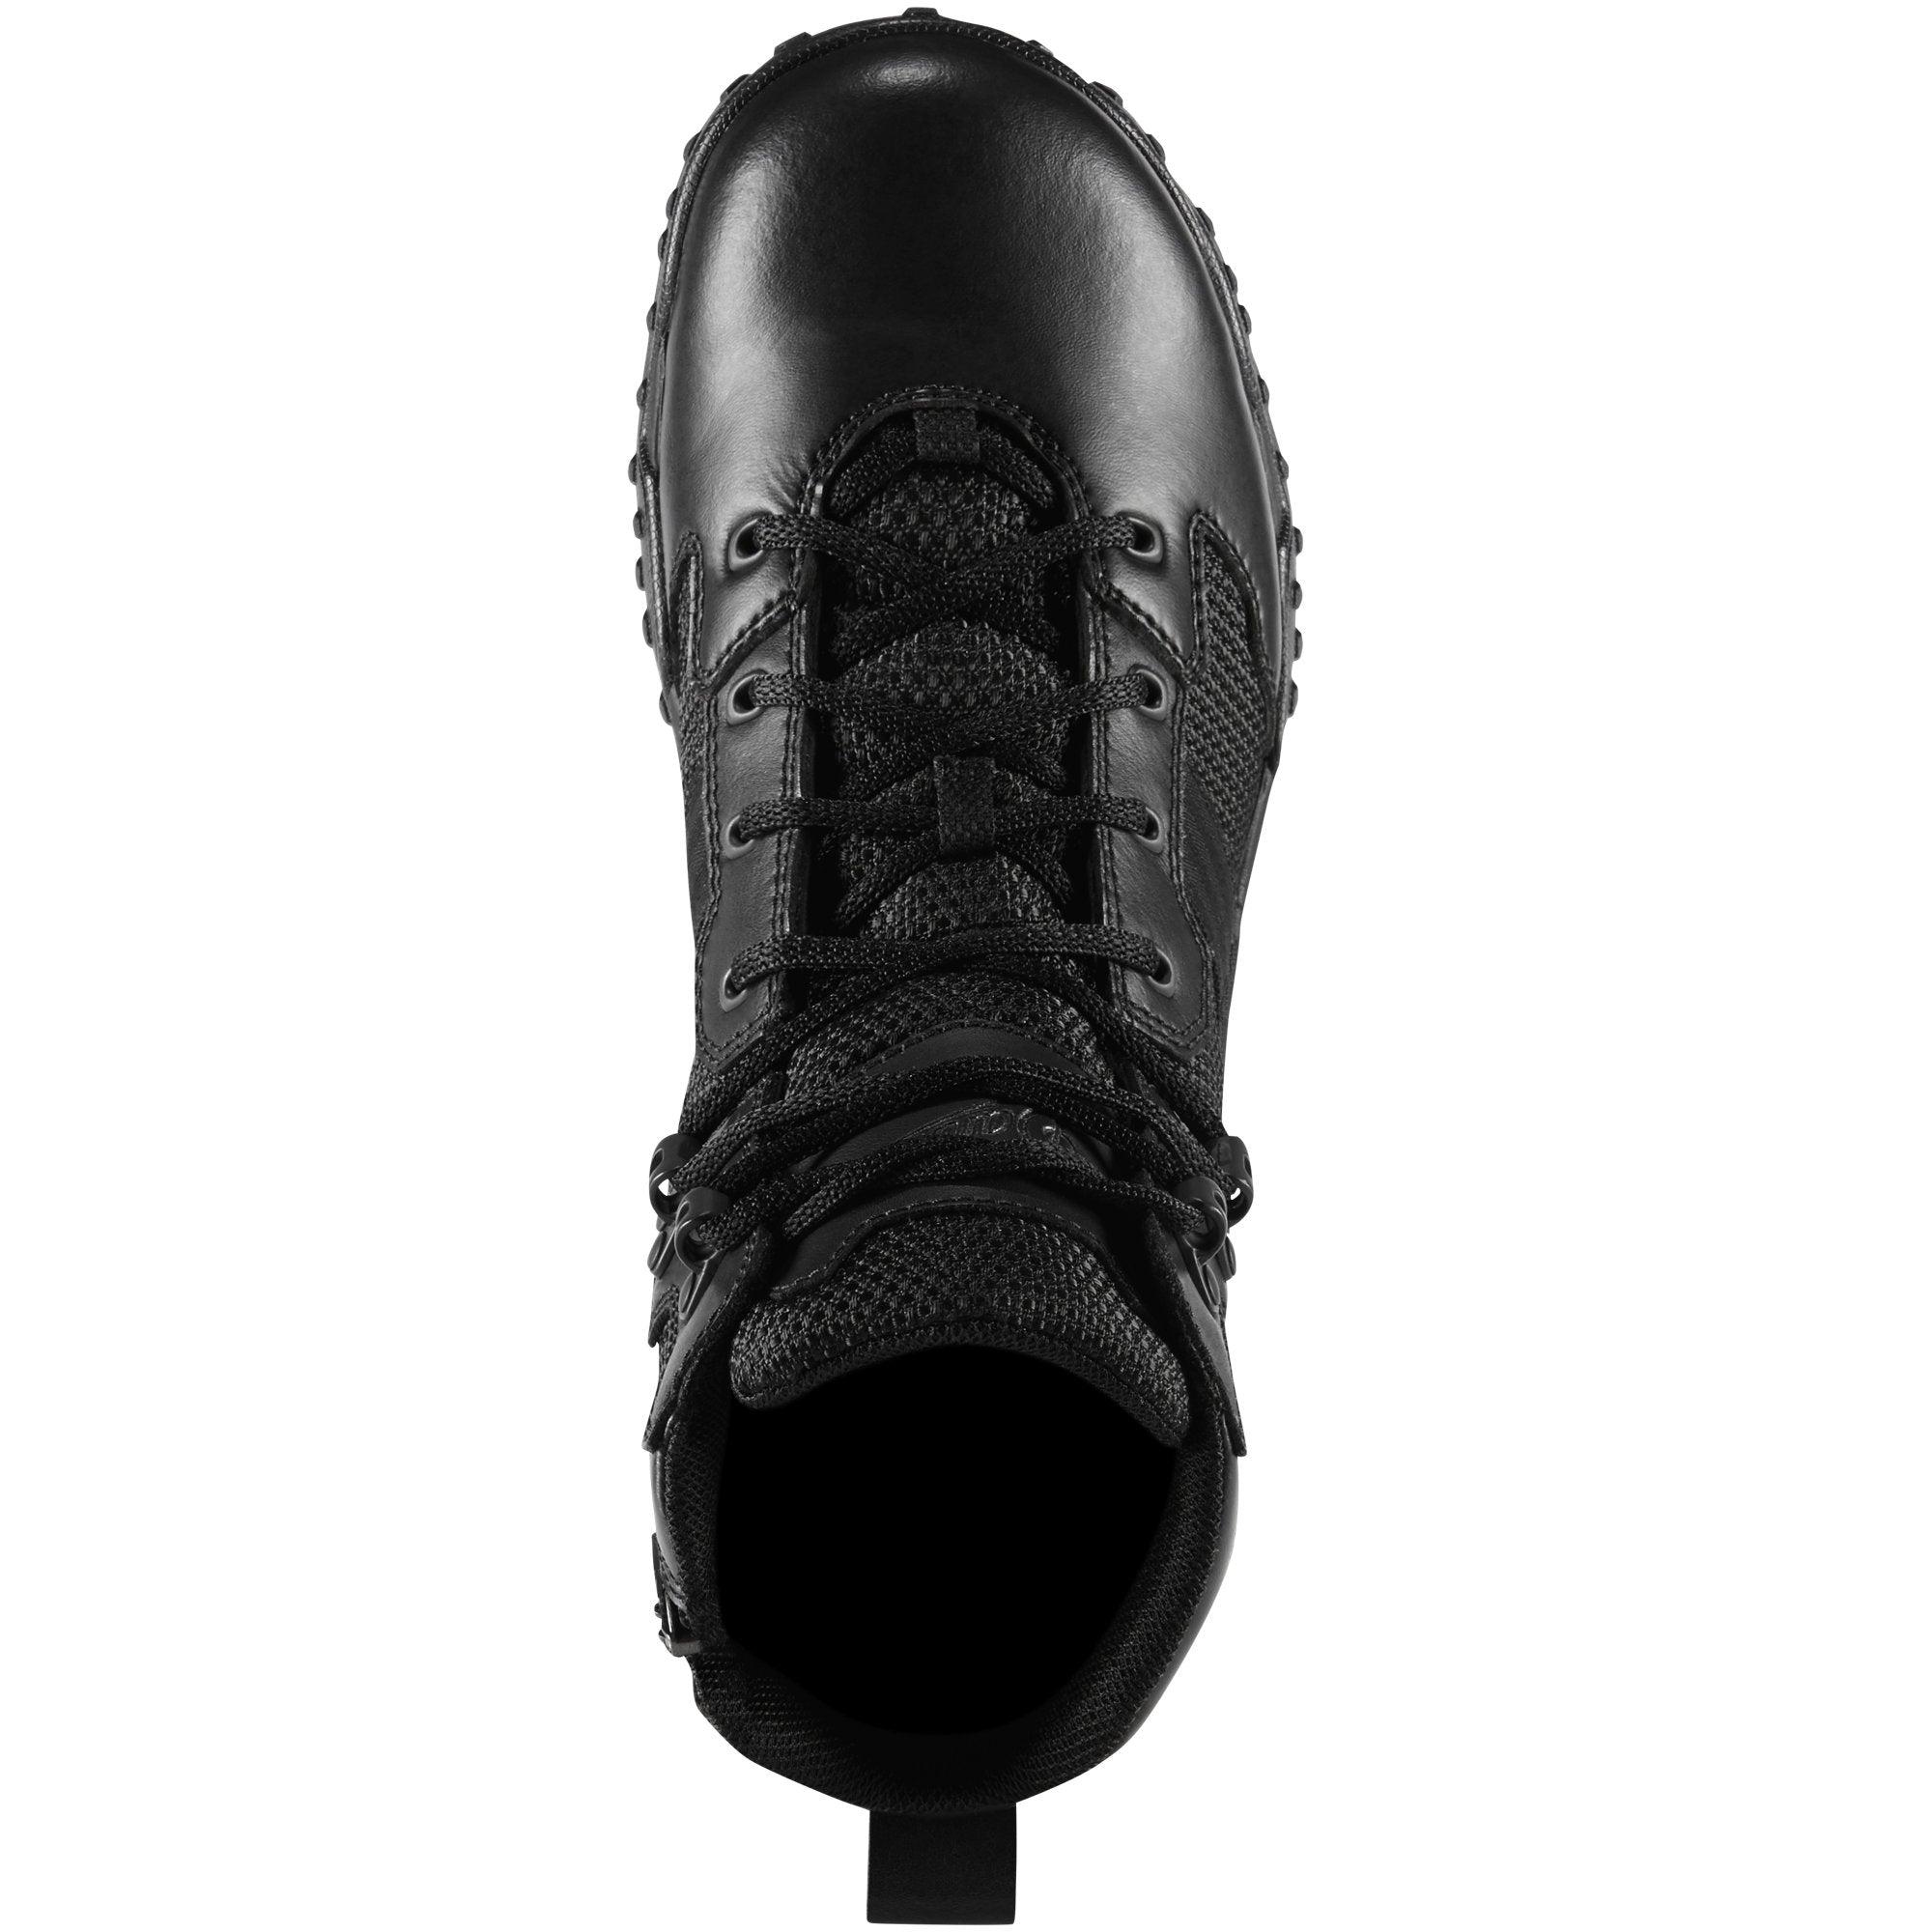 Danner Scorch 6” Side-Zip Tactical Boots – Black Danner Dry | Danner